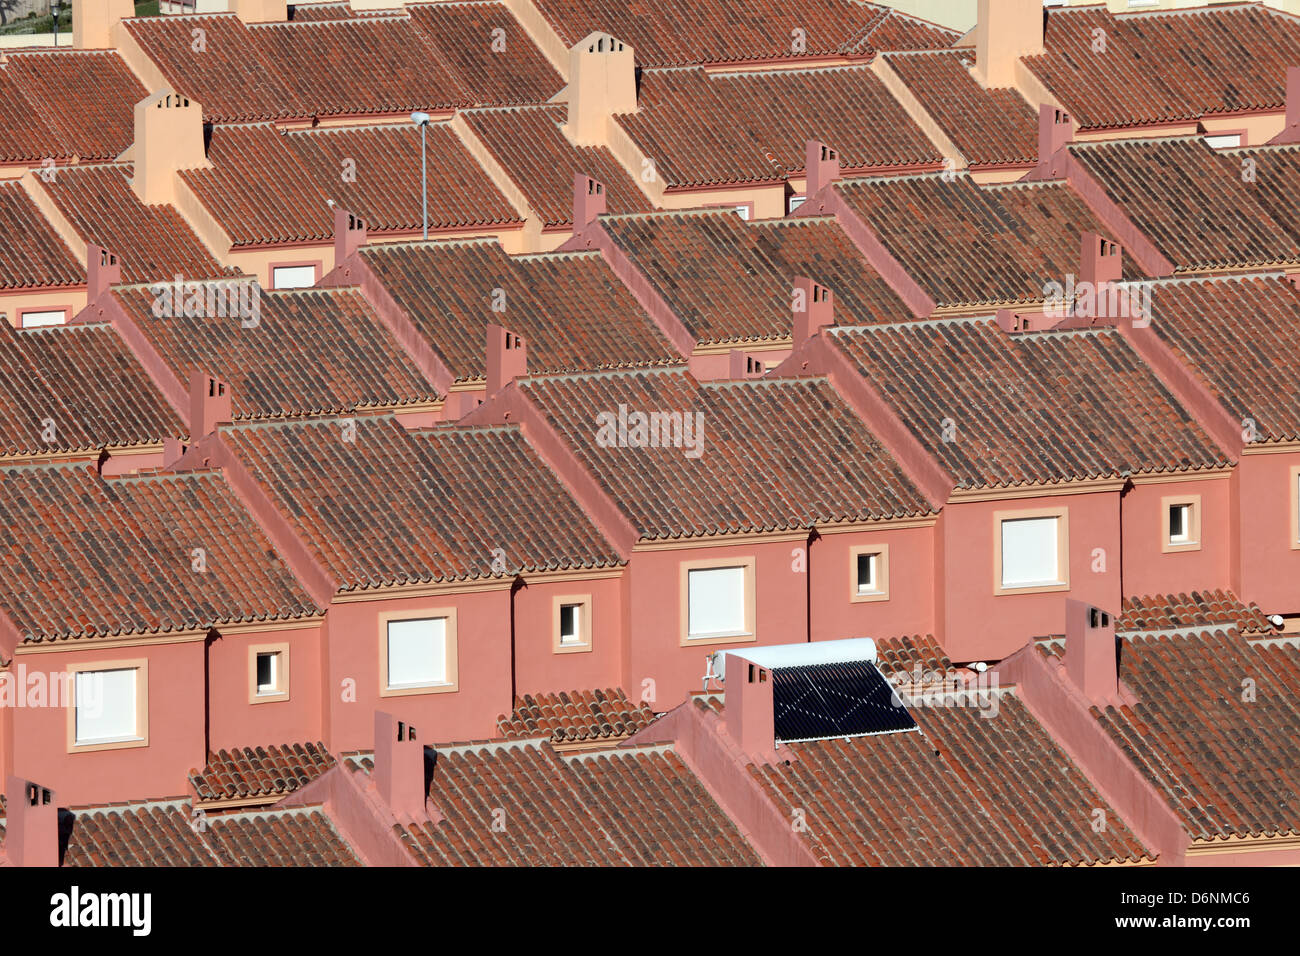 Dächer von roten Wohnhäusern in einer Wohnsiedlung in Spanien Stockfoto